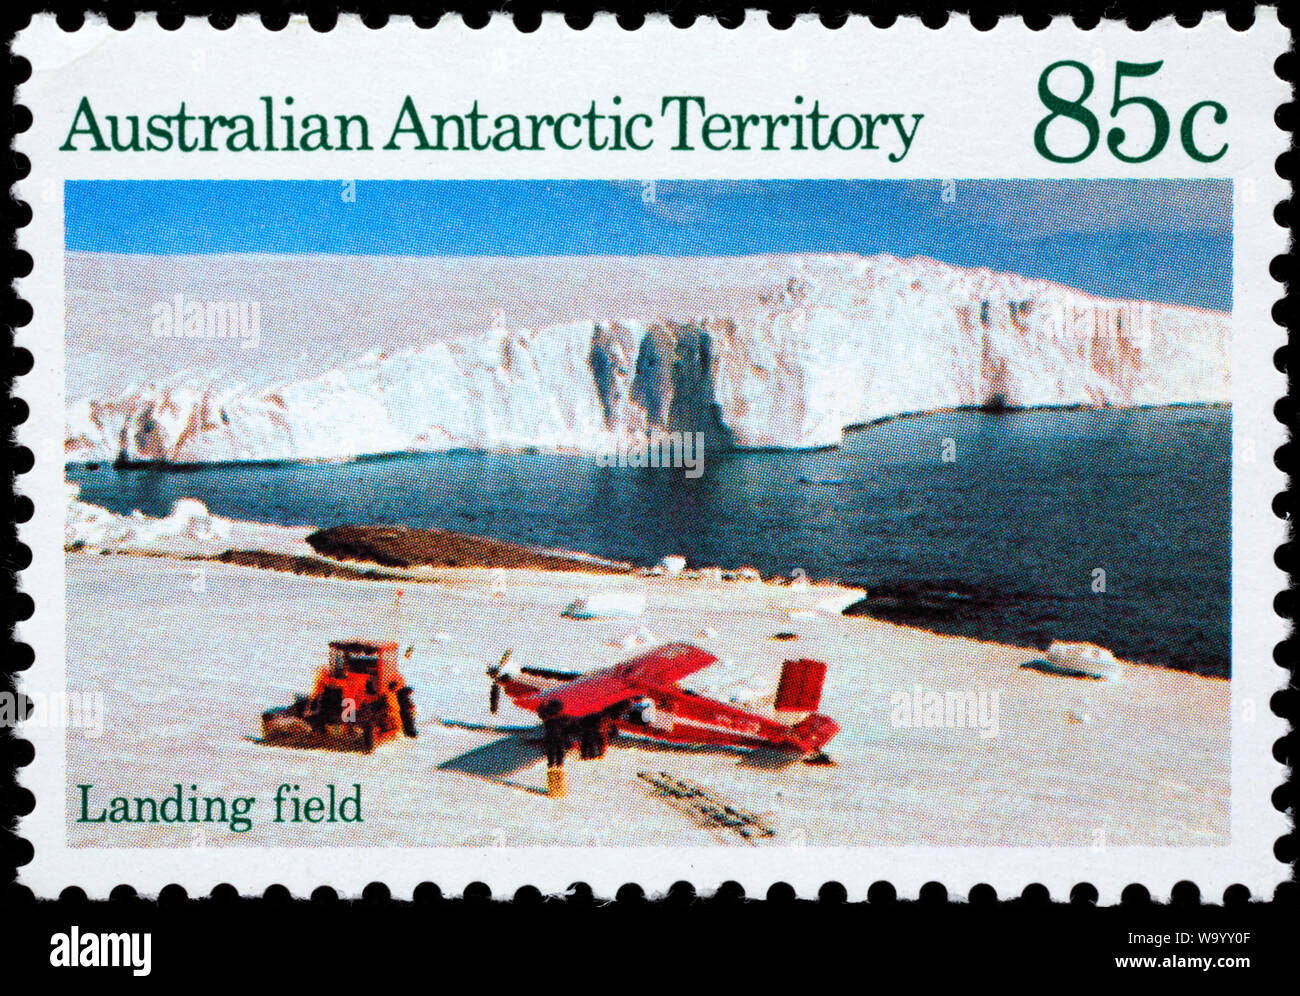 Campo de aterrizaje, Territorio Antártico Australiano, sello, Australia, 1984 Foto de stock